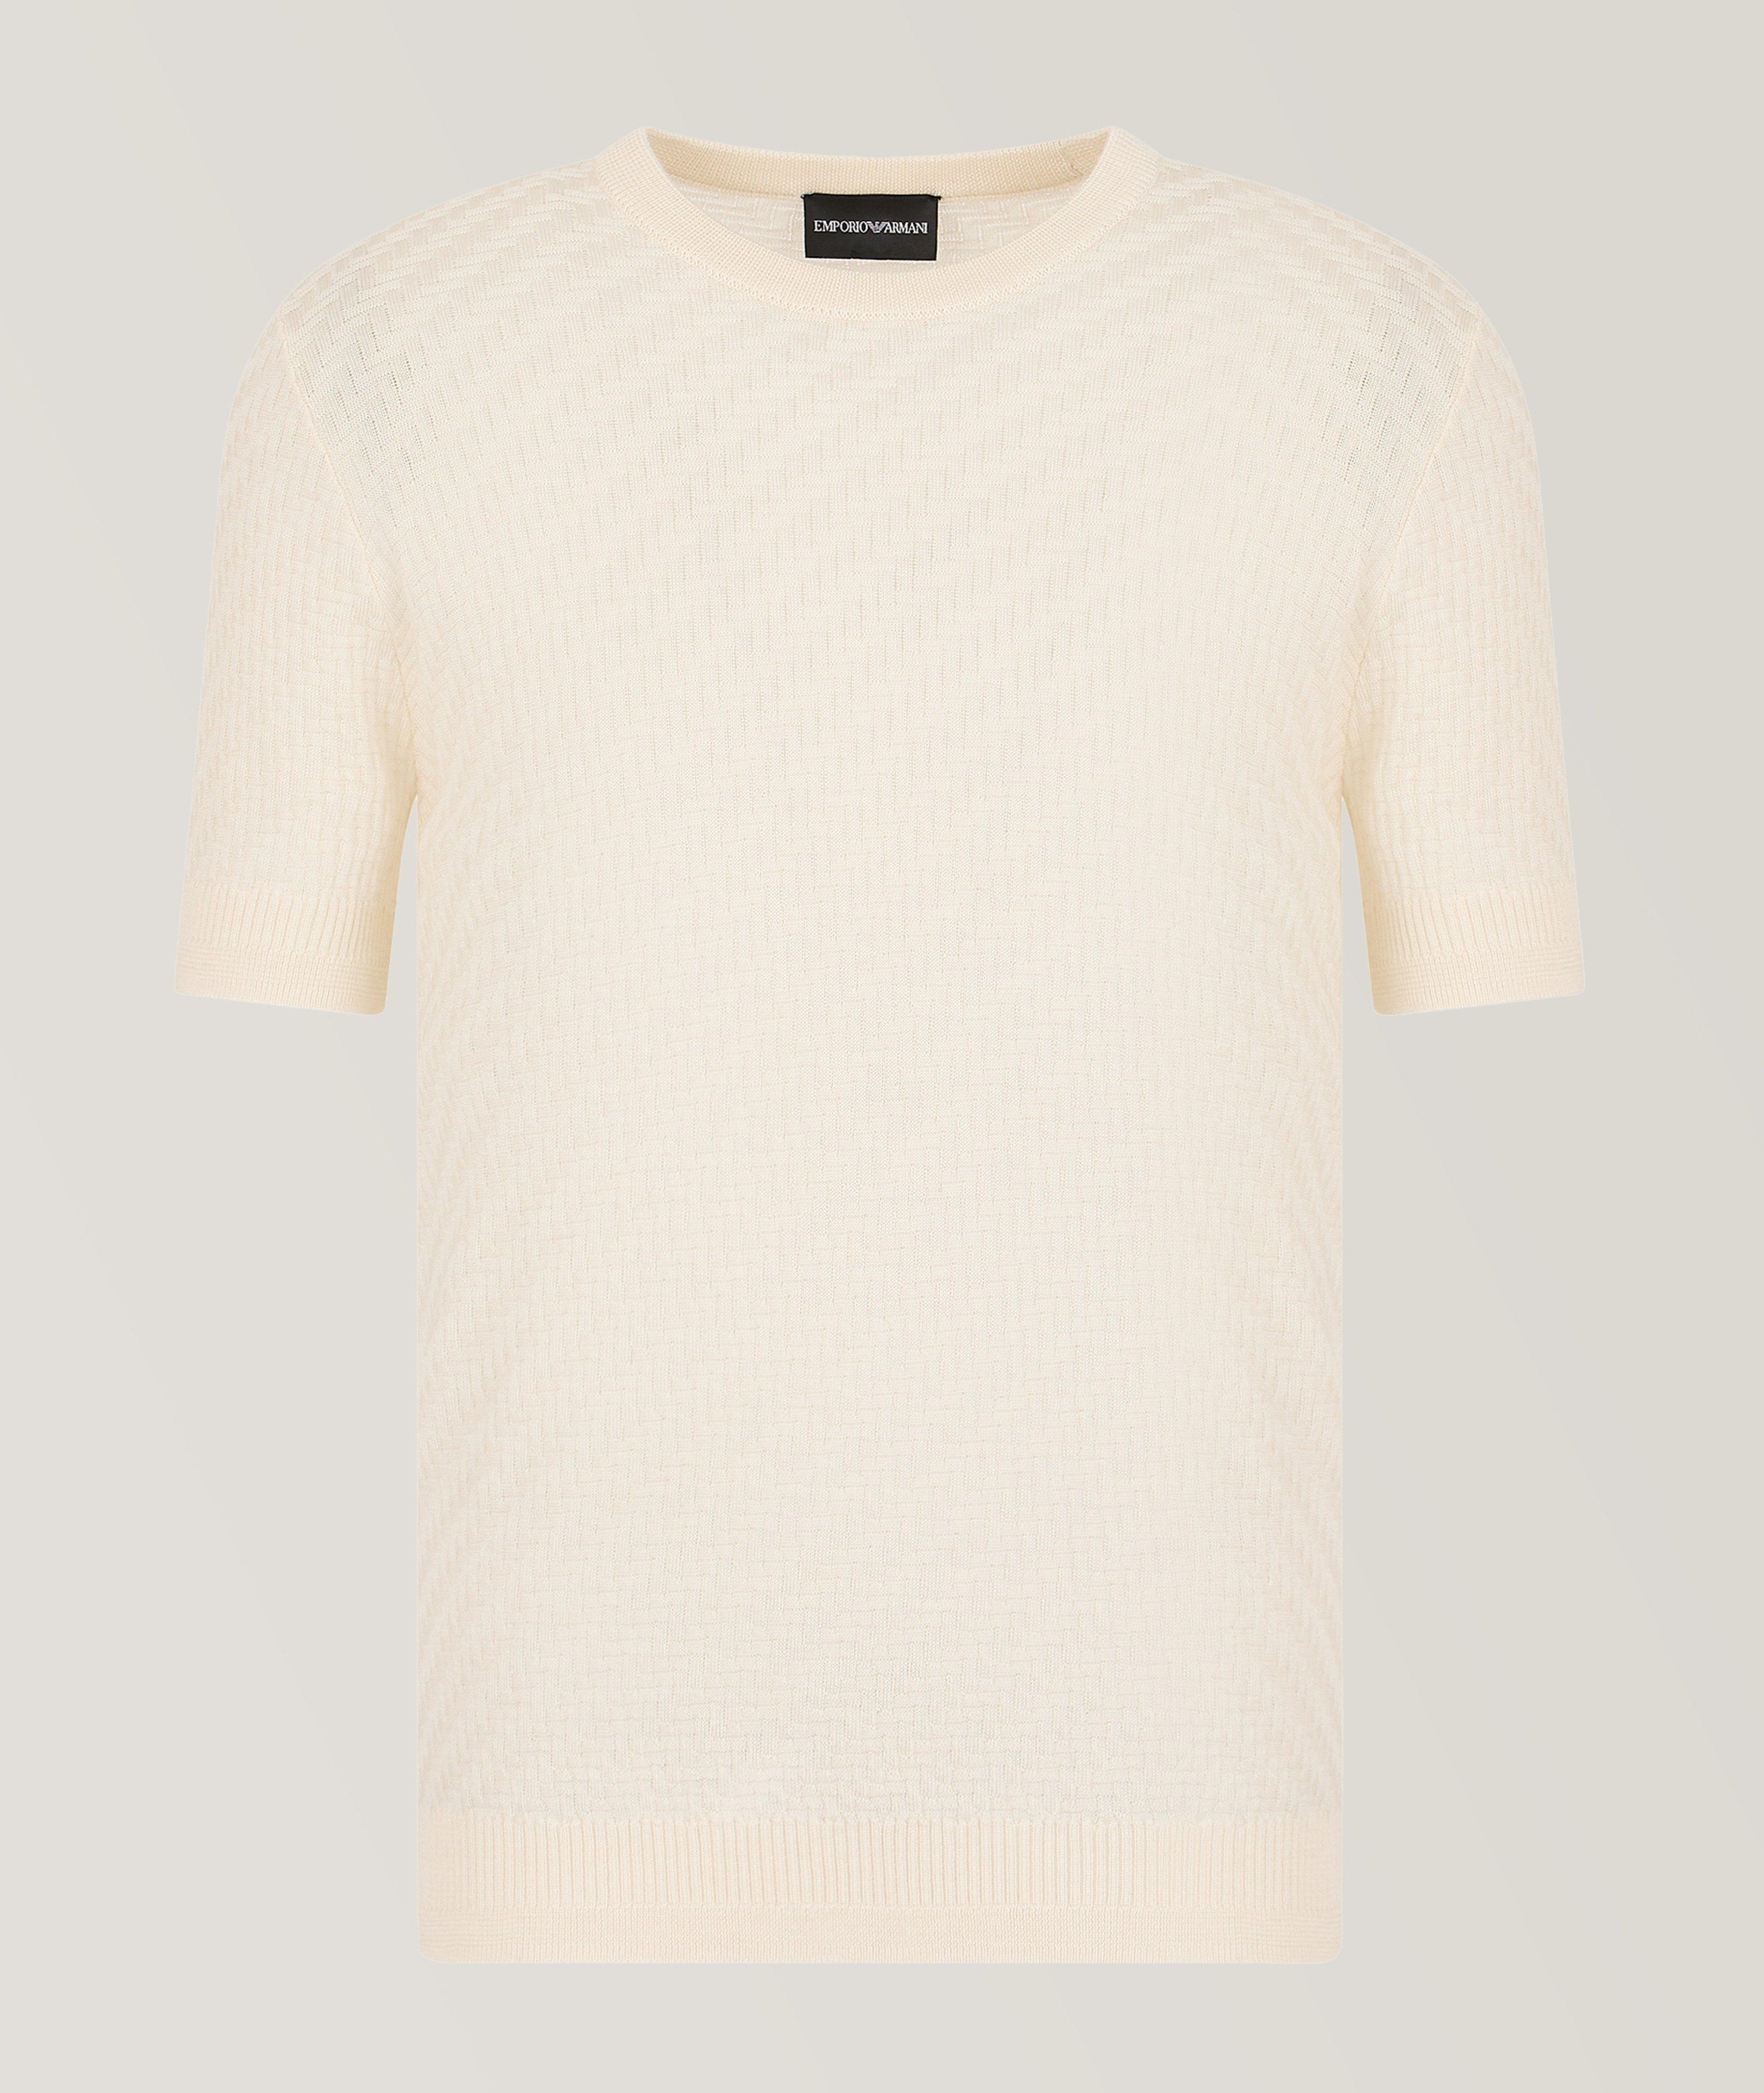 Sustainable Acrylic-Blend T-Shirt image 0